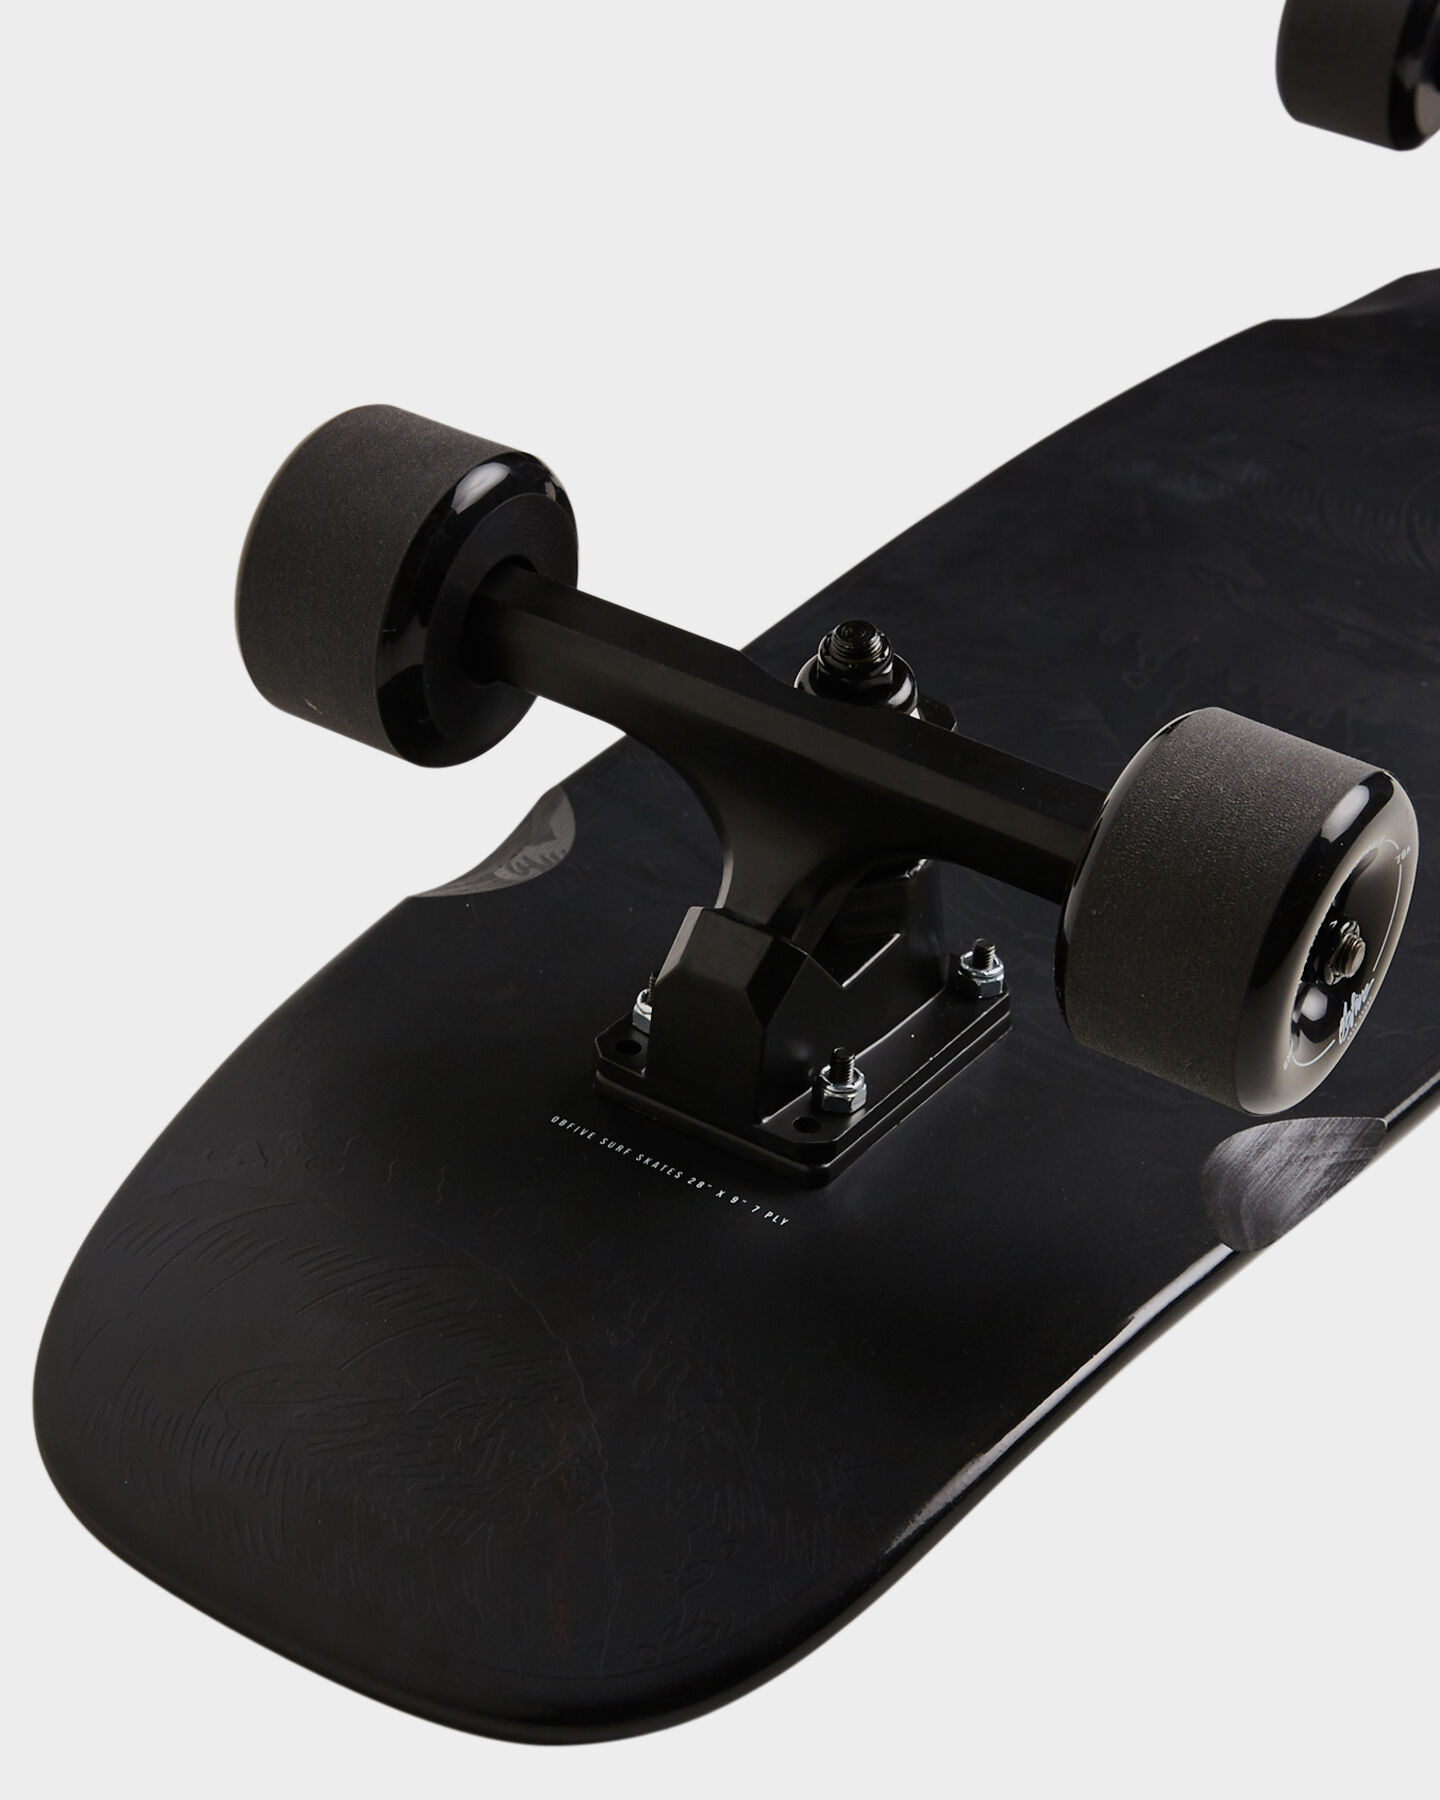 Obfive Surf Skate Cruiser Skateboard Complete Dark Waters Rkp1 